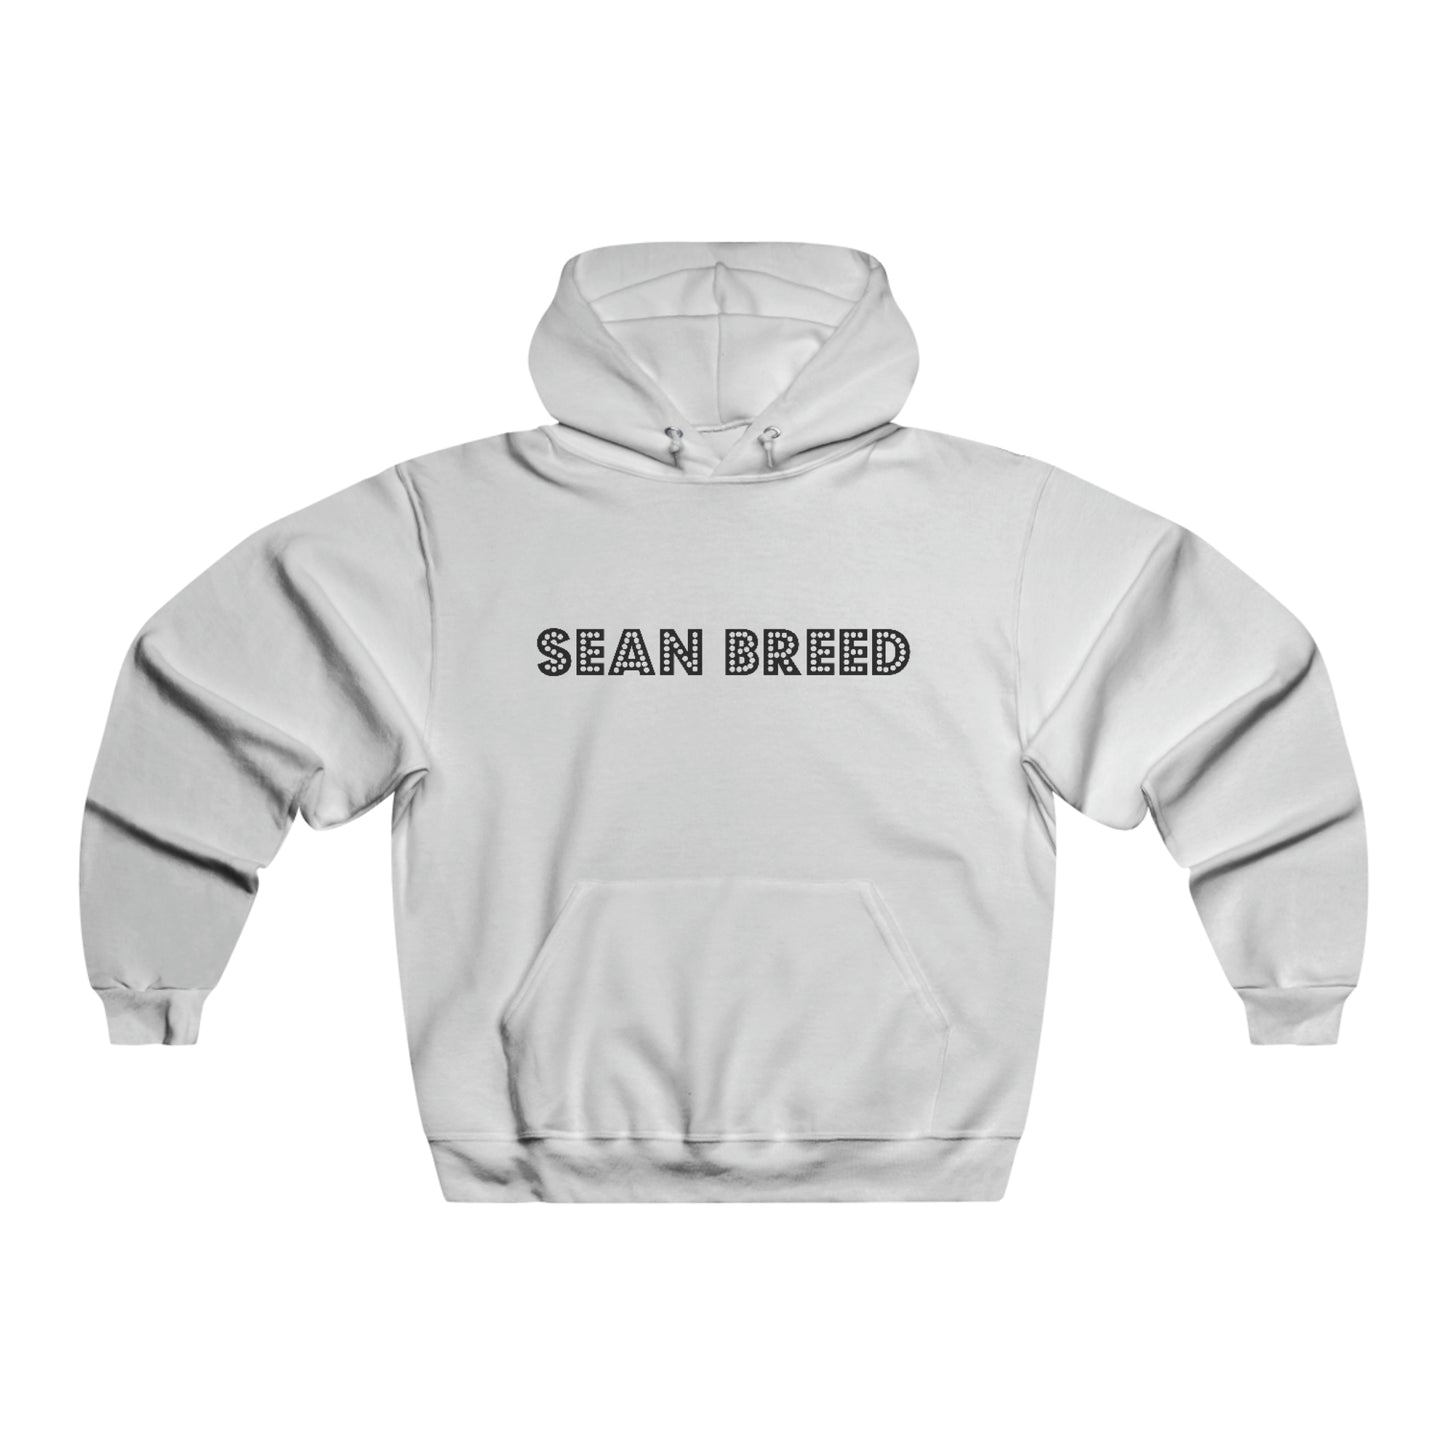 Sean Breed “Movie Star” Men's NUBLEND® Hooded Sweatshirt